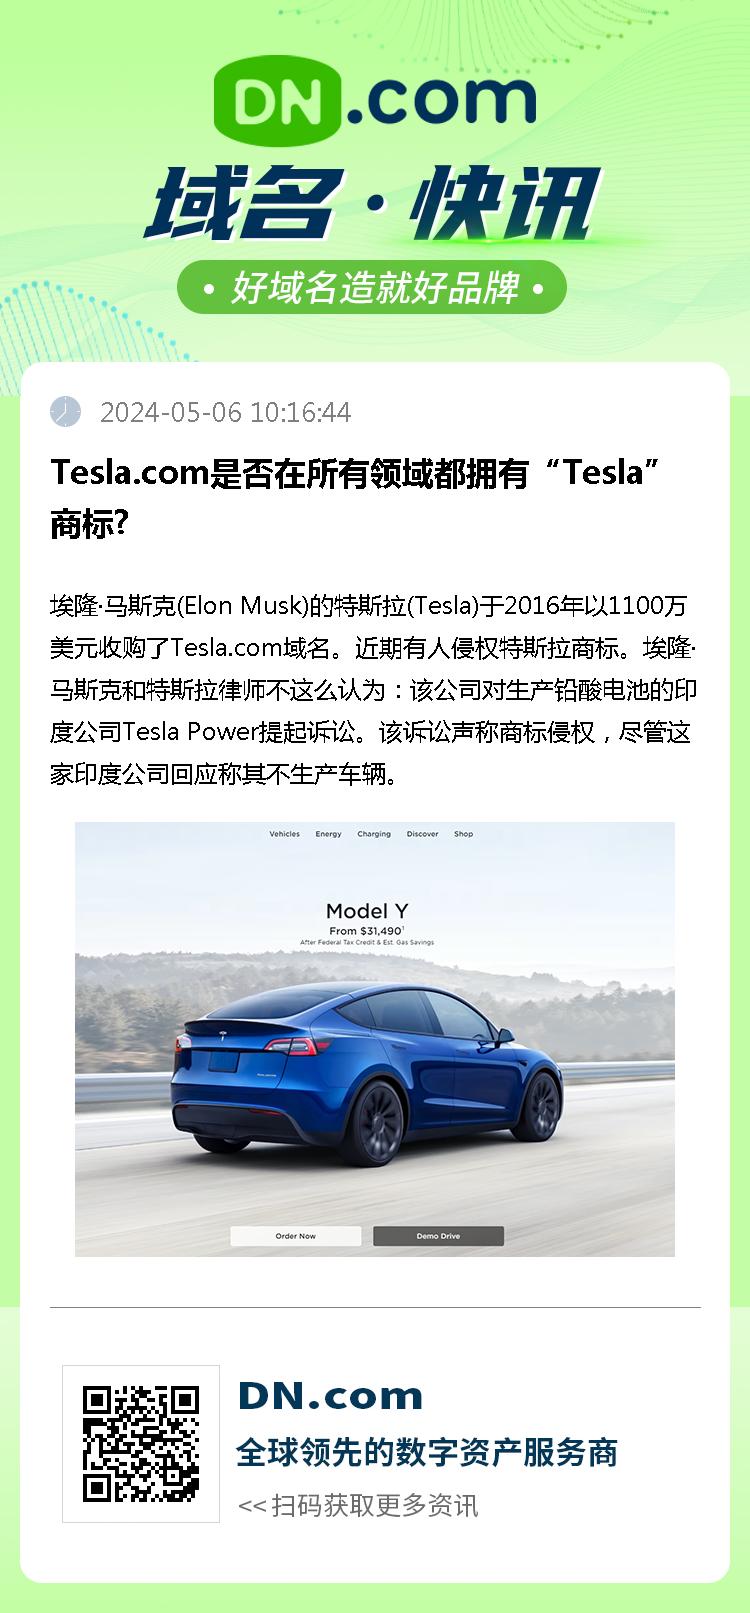 Tesla.com是否在所有领域都拥有“Tesla”商标?